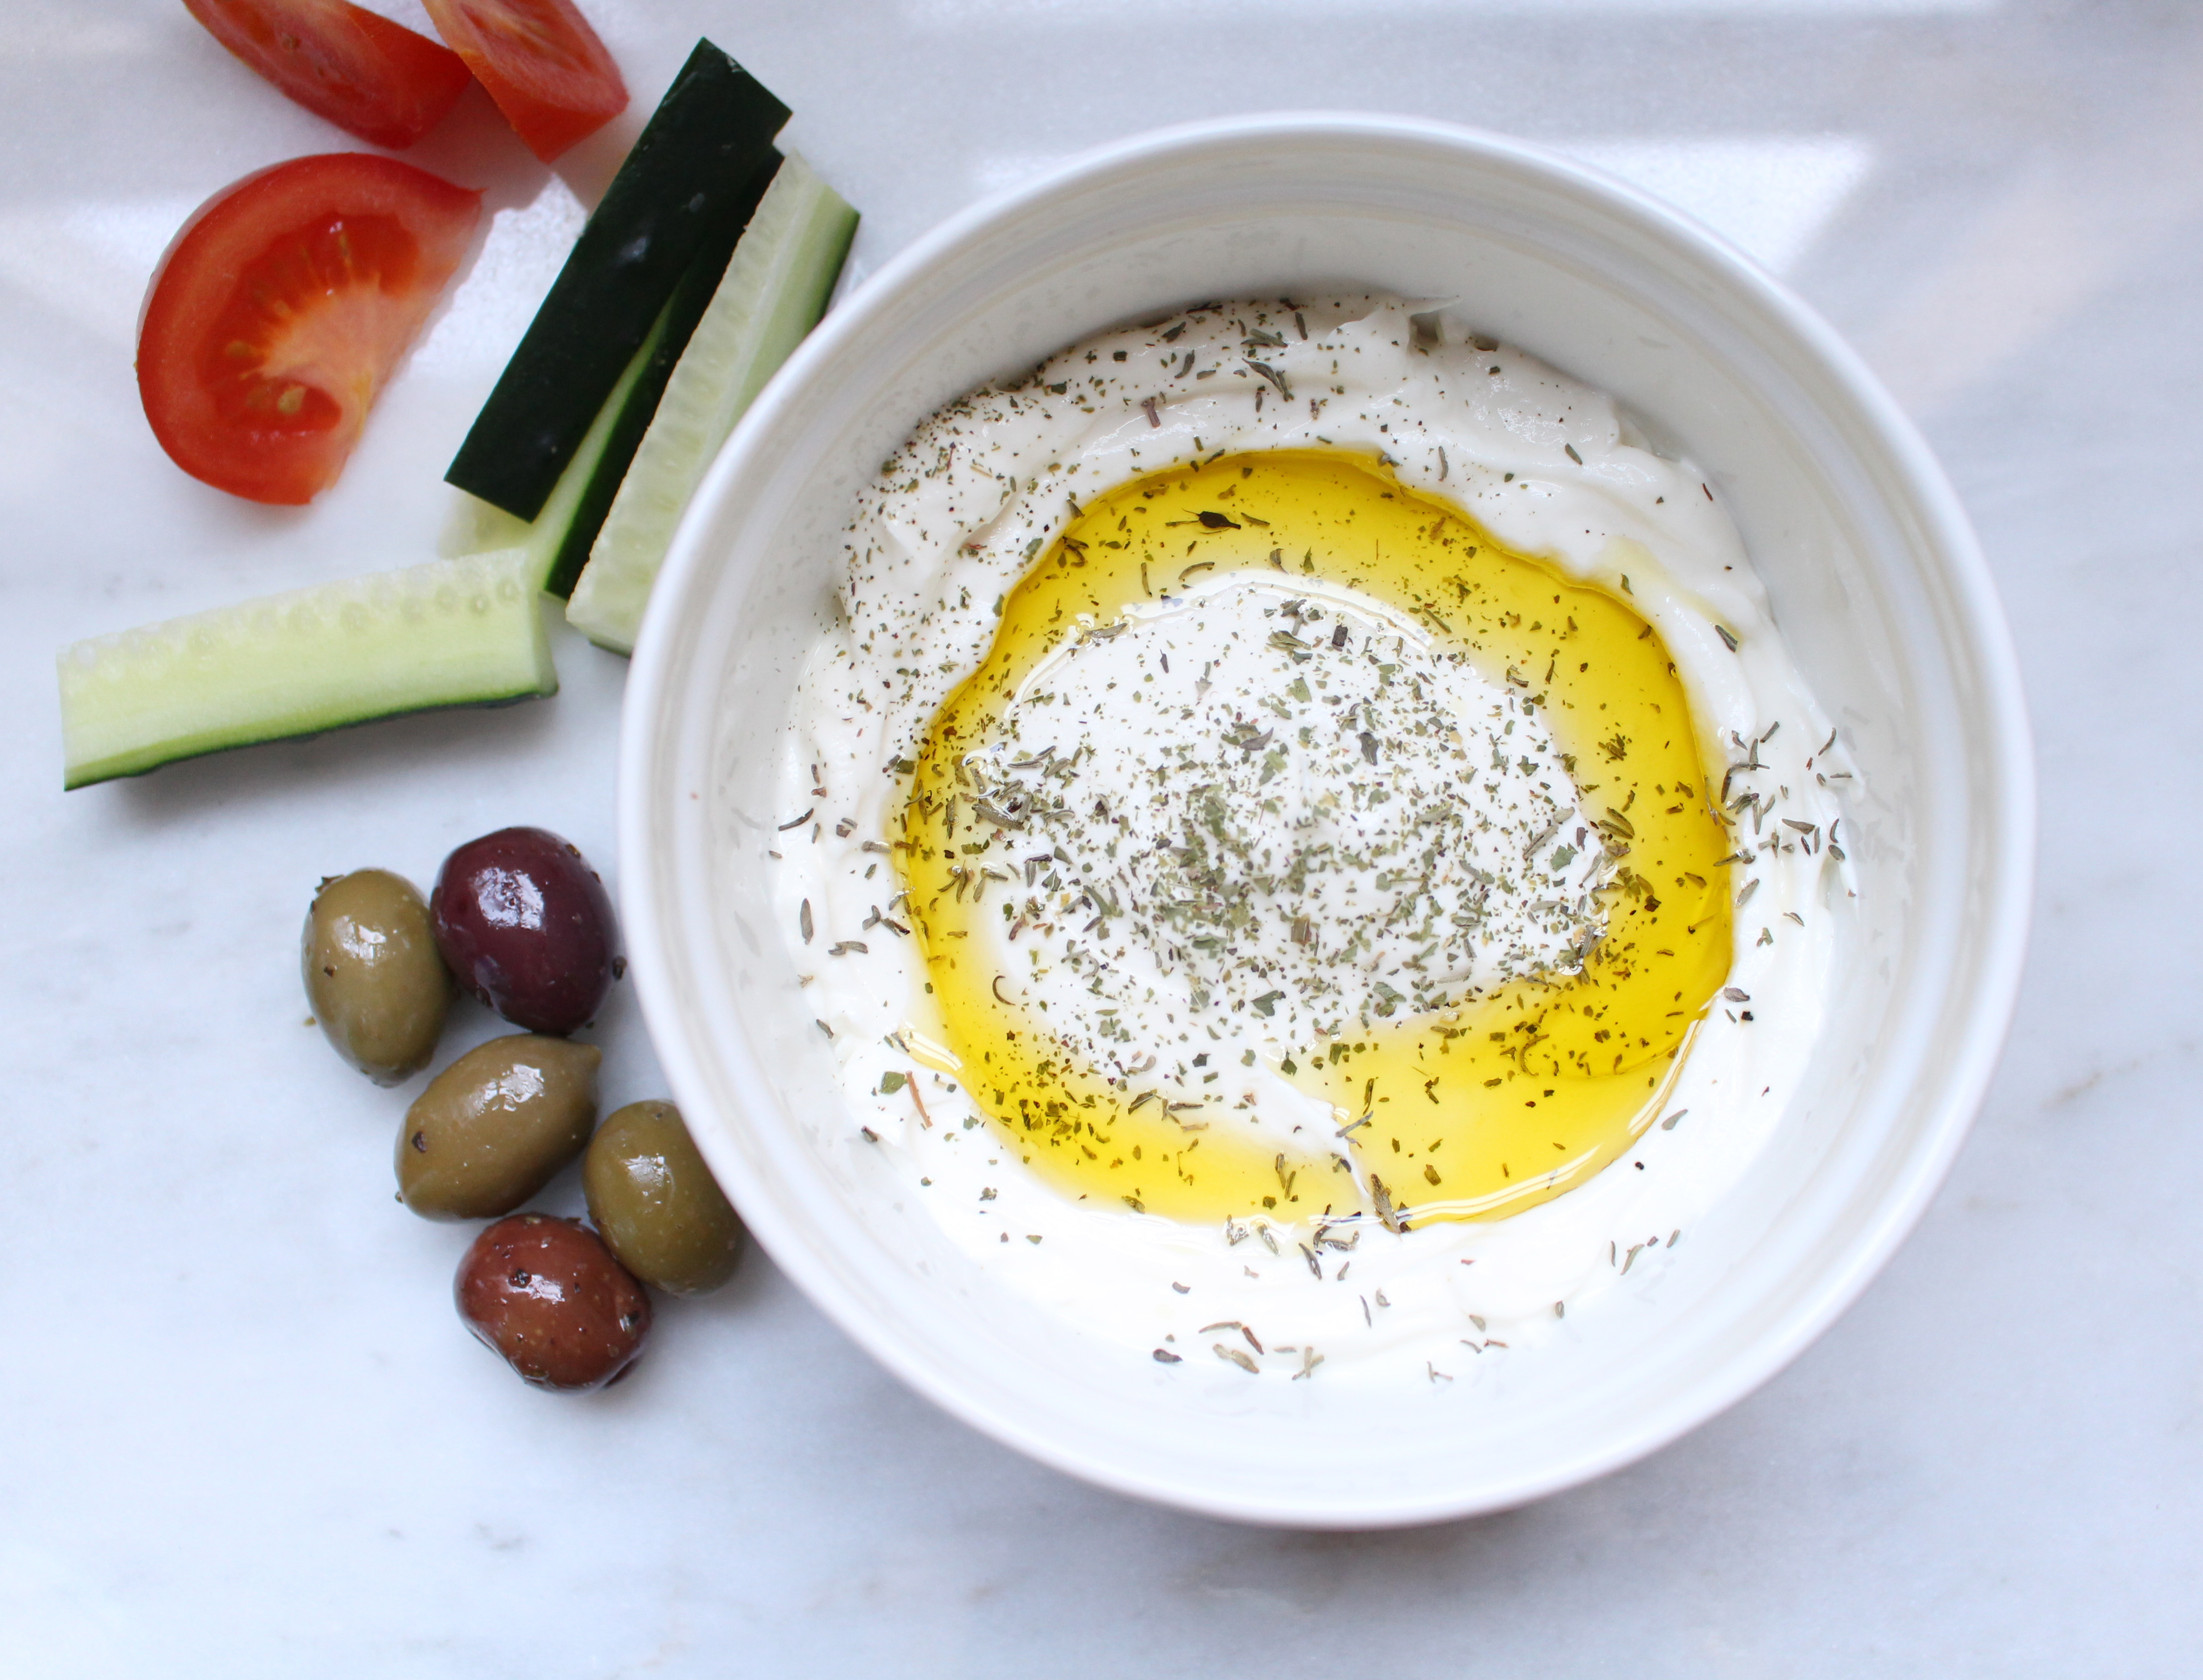 Labneh | A simple, 2 ingredient Lebanese yogurt spread